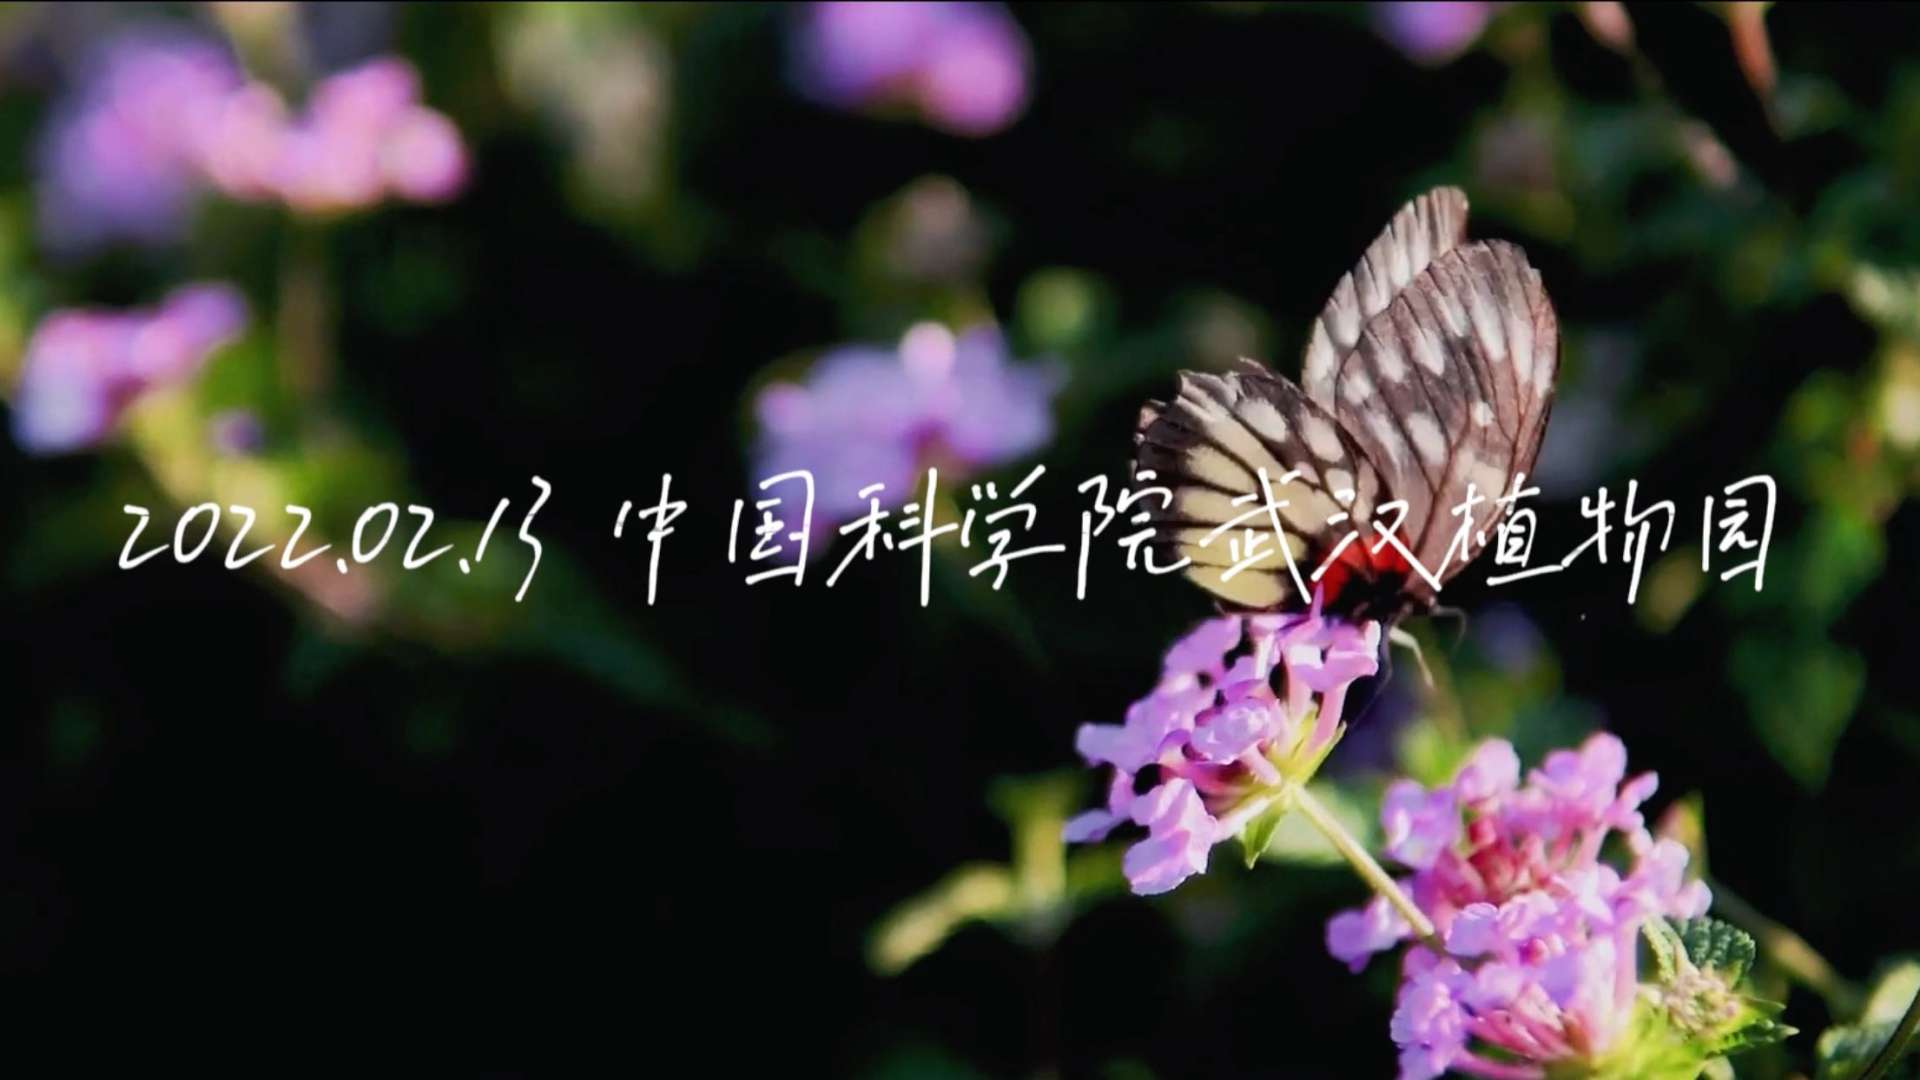 音乐MV | 中科院武汉植物园 | 烛光音乐会 | 现场快剪宣传片